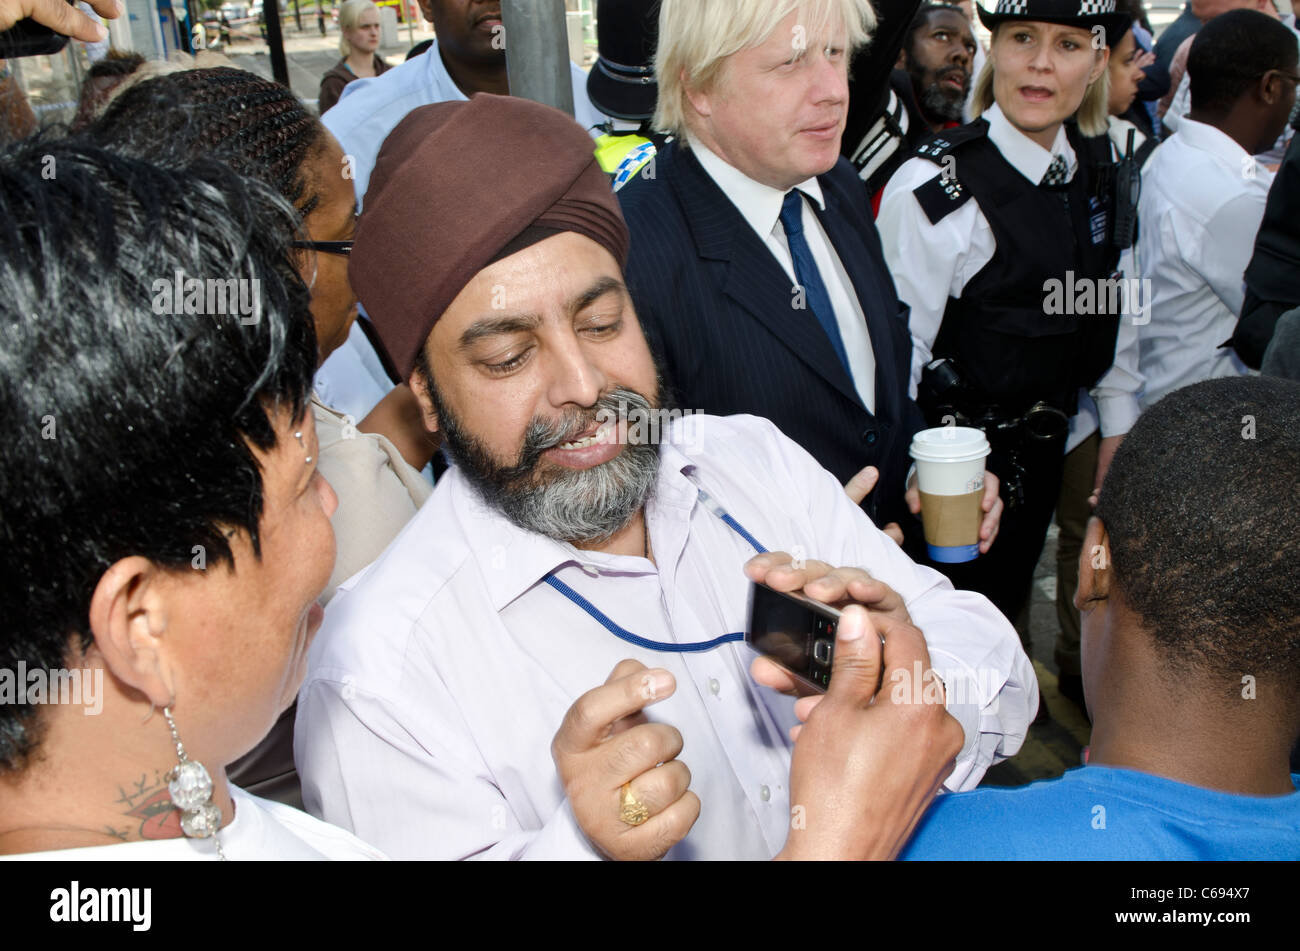 Montre homme Seikh photo de Boris Johnson à un ami, comme Johnson Maire de Londres répond aux foules après des émeutes de Croydon. Banque D'Images